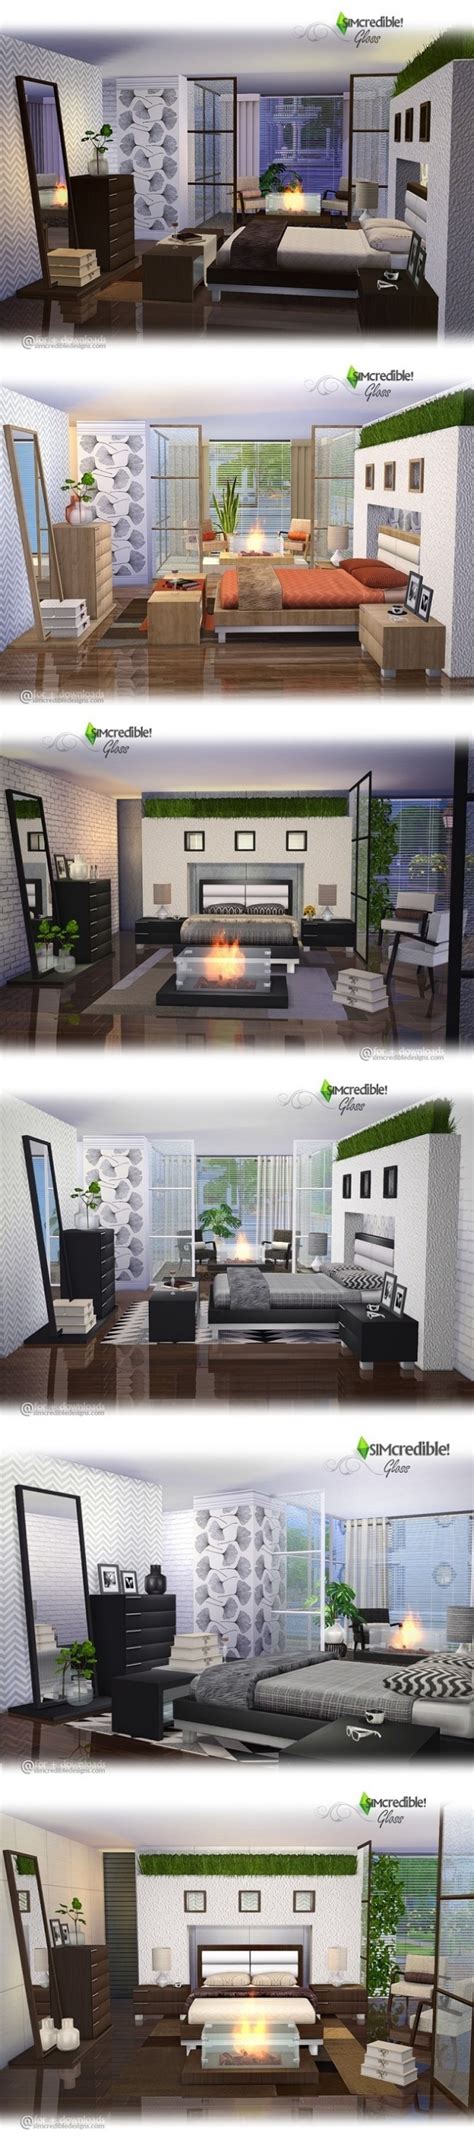 Спальня Gloss By Simcredible Мебель для Sims 4 Каталог файлов